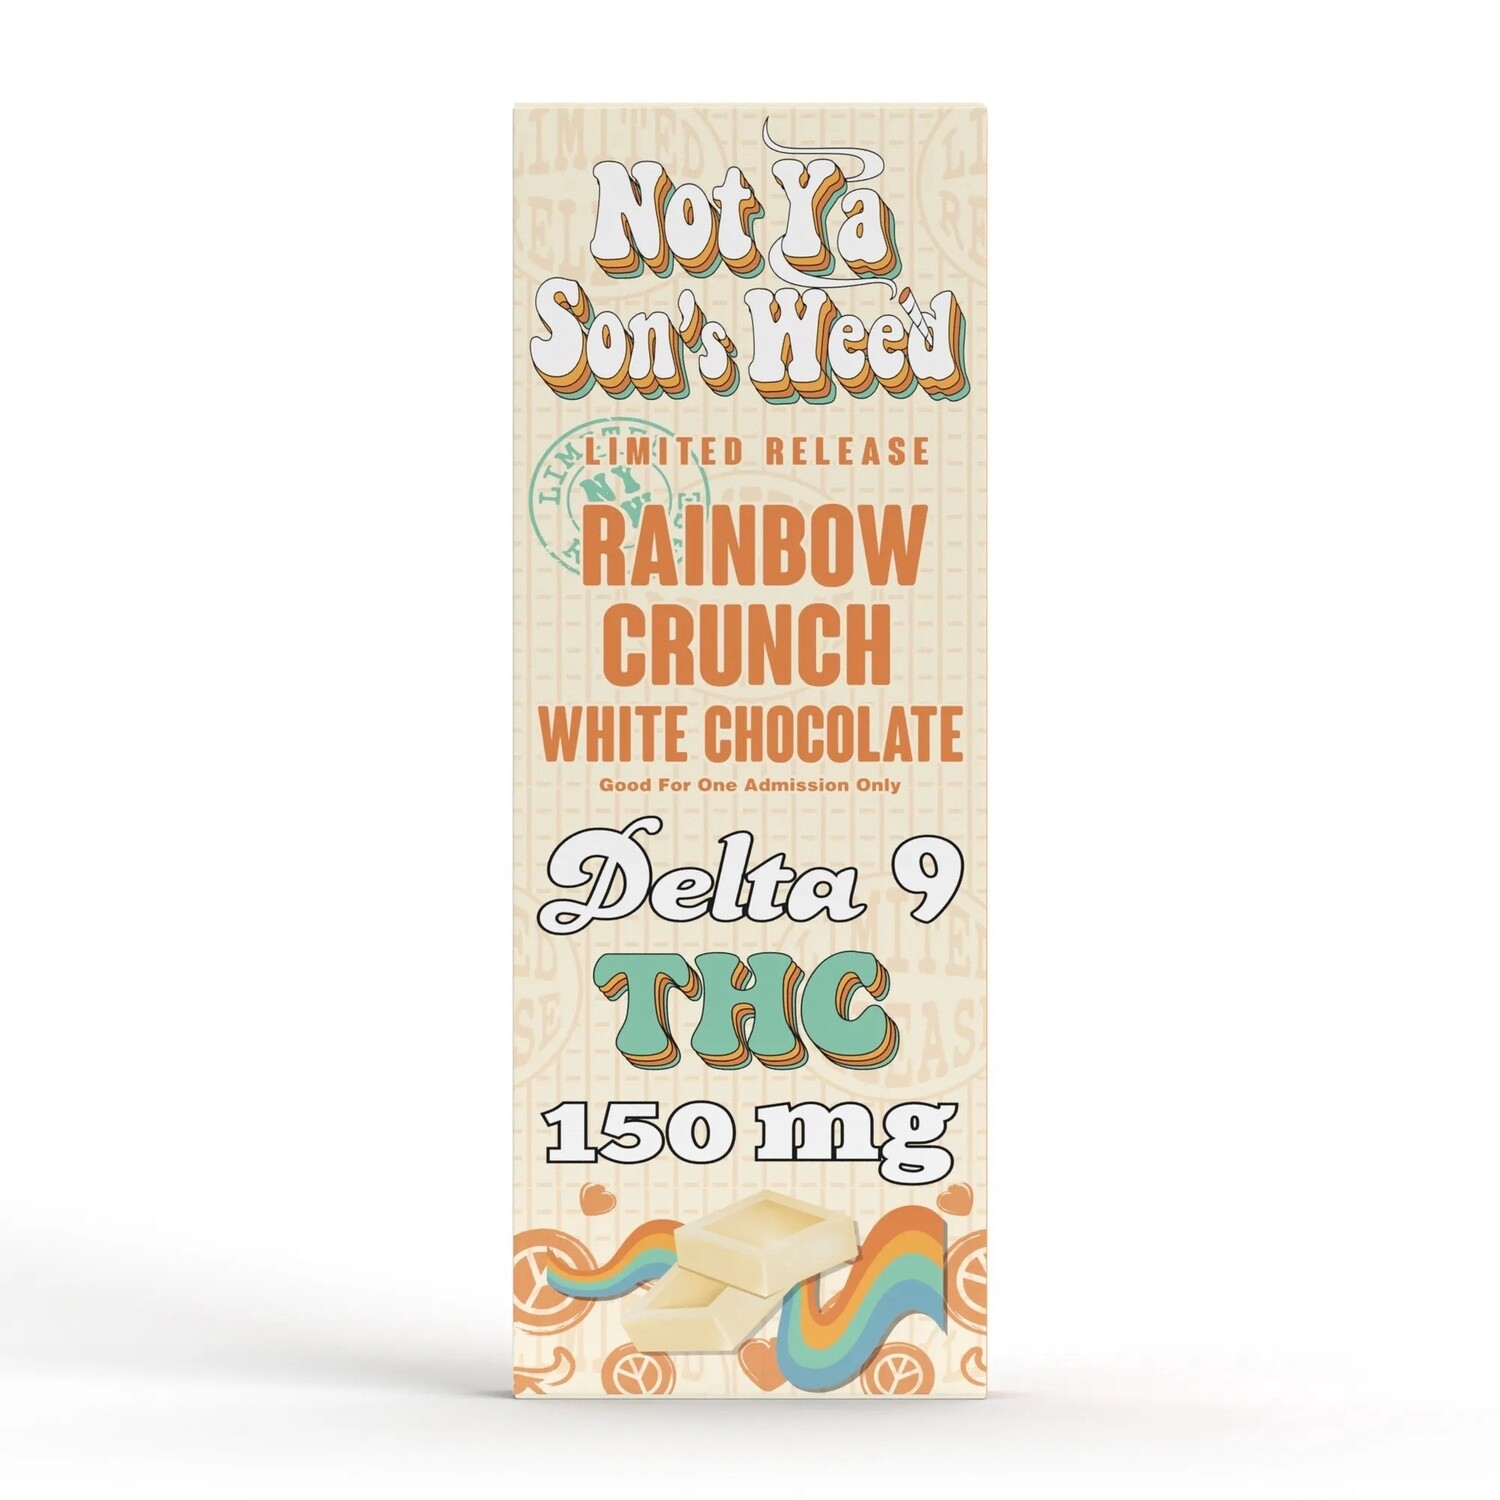 NYSW Delta 9 Rainbow Crunch Candy Bar - 150mg